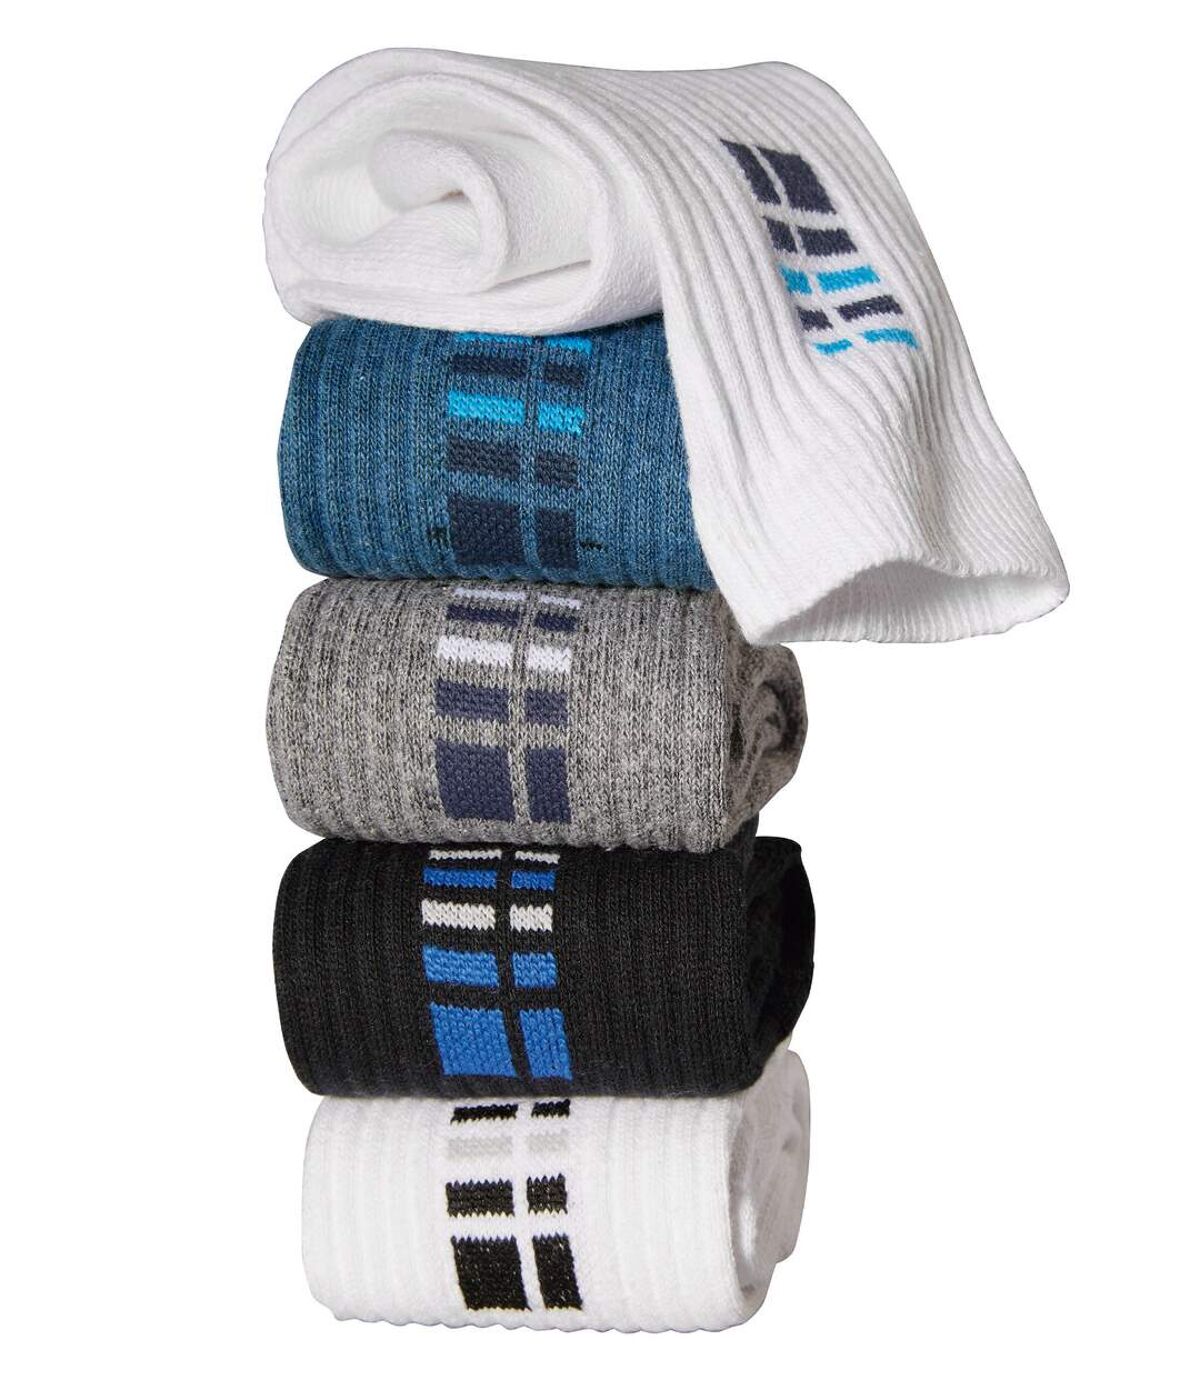 Pack of 5 Pairs of Men's Sports Socks - White Gray Indigo Black Atlas For Men